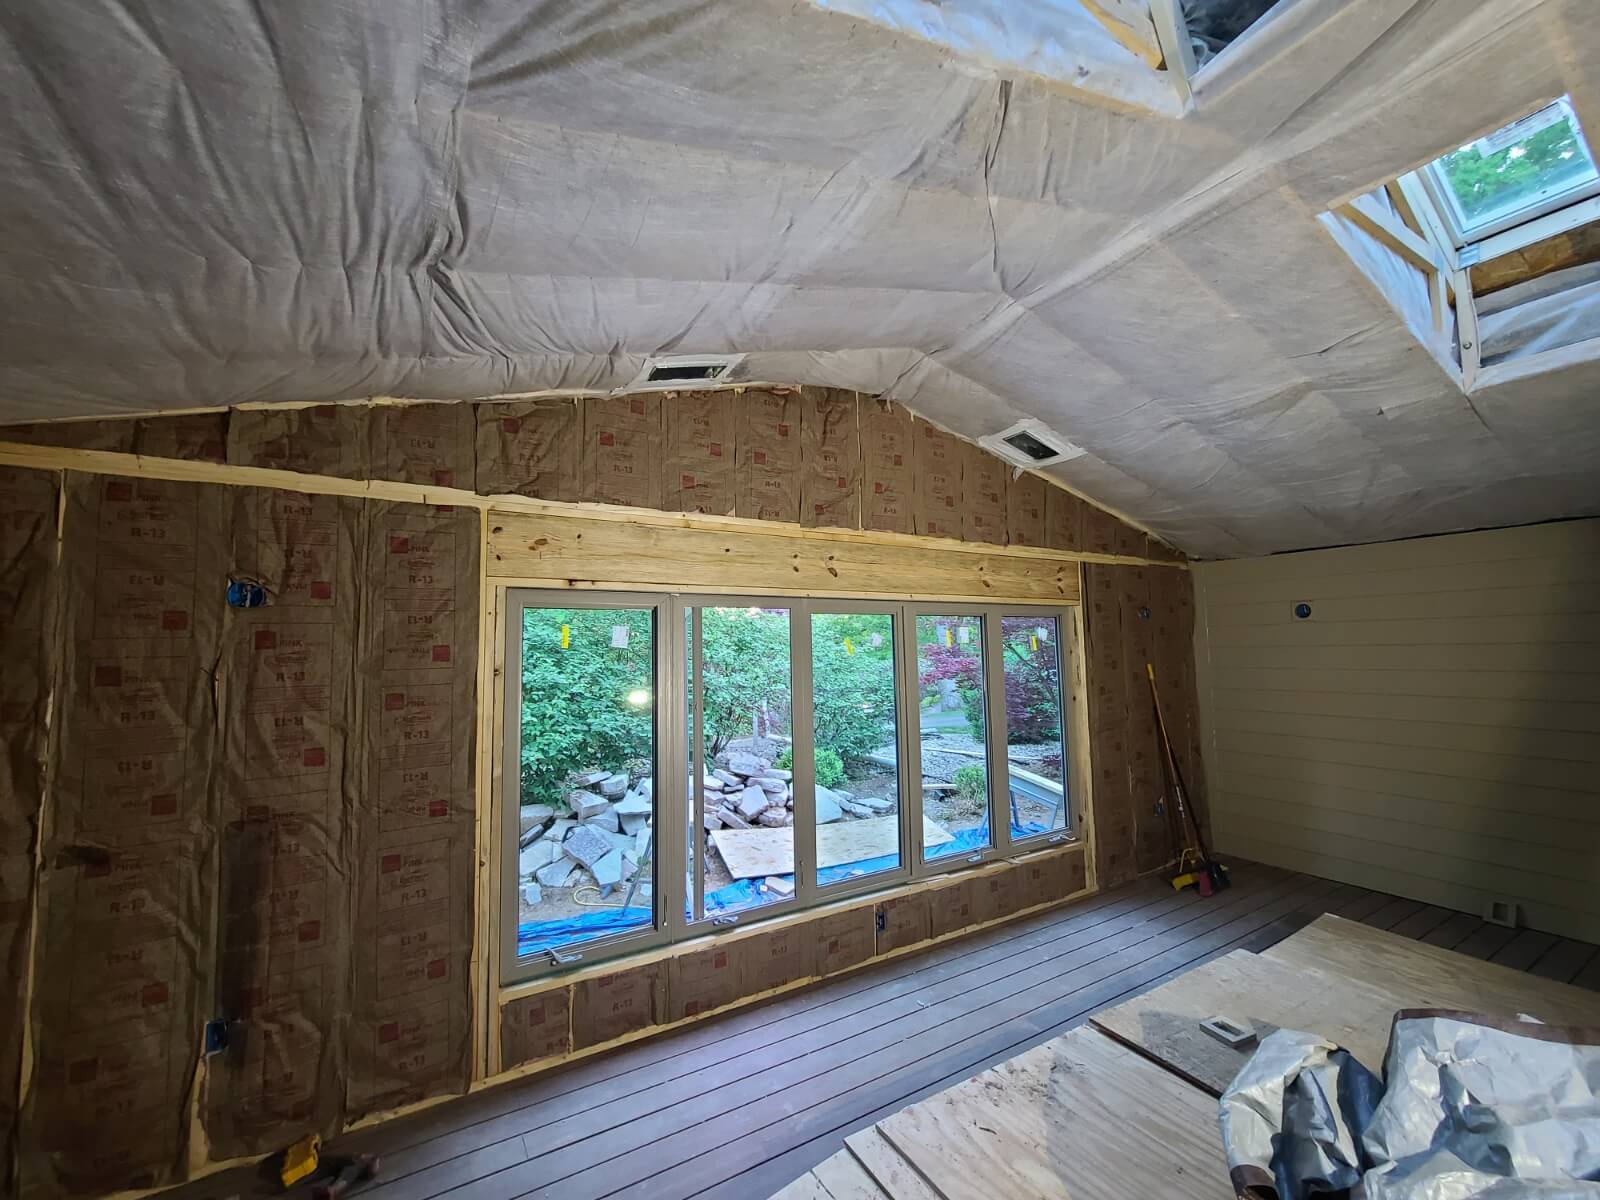 Norwich attic insulation company